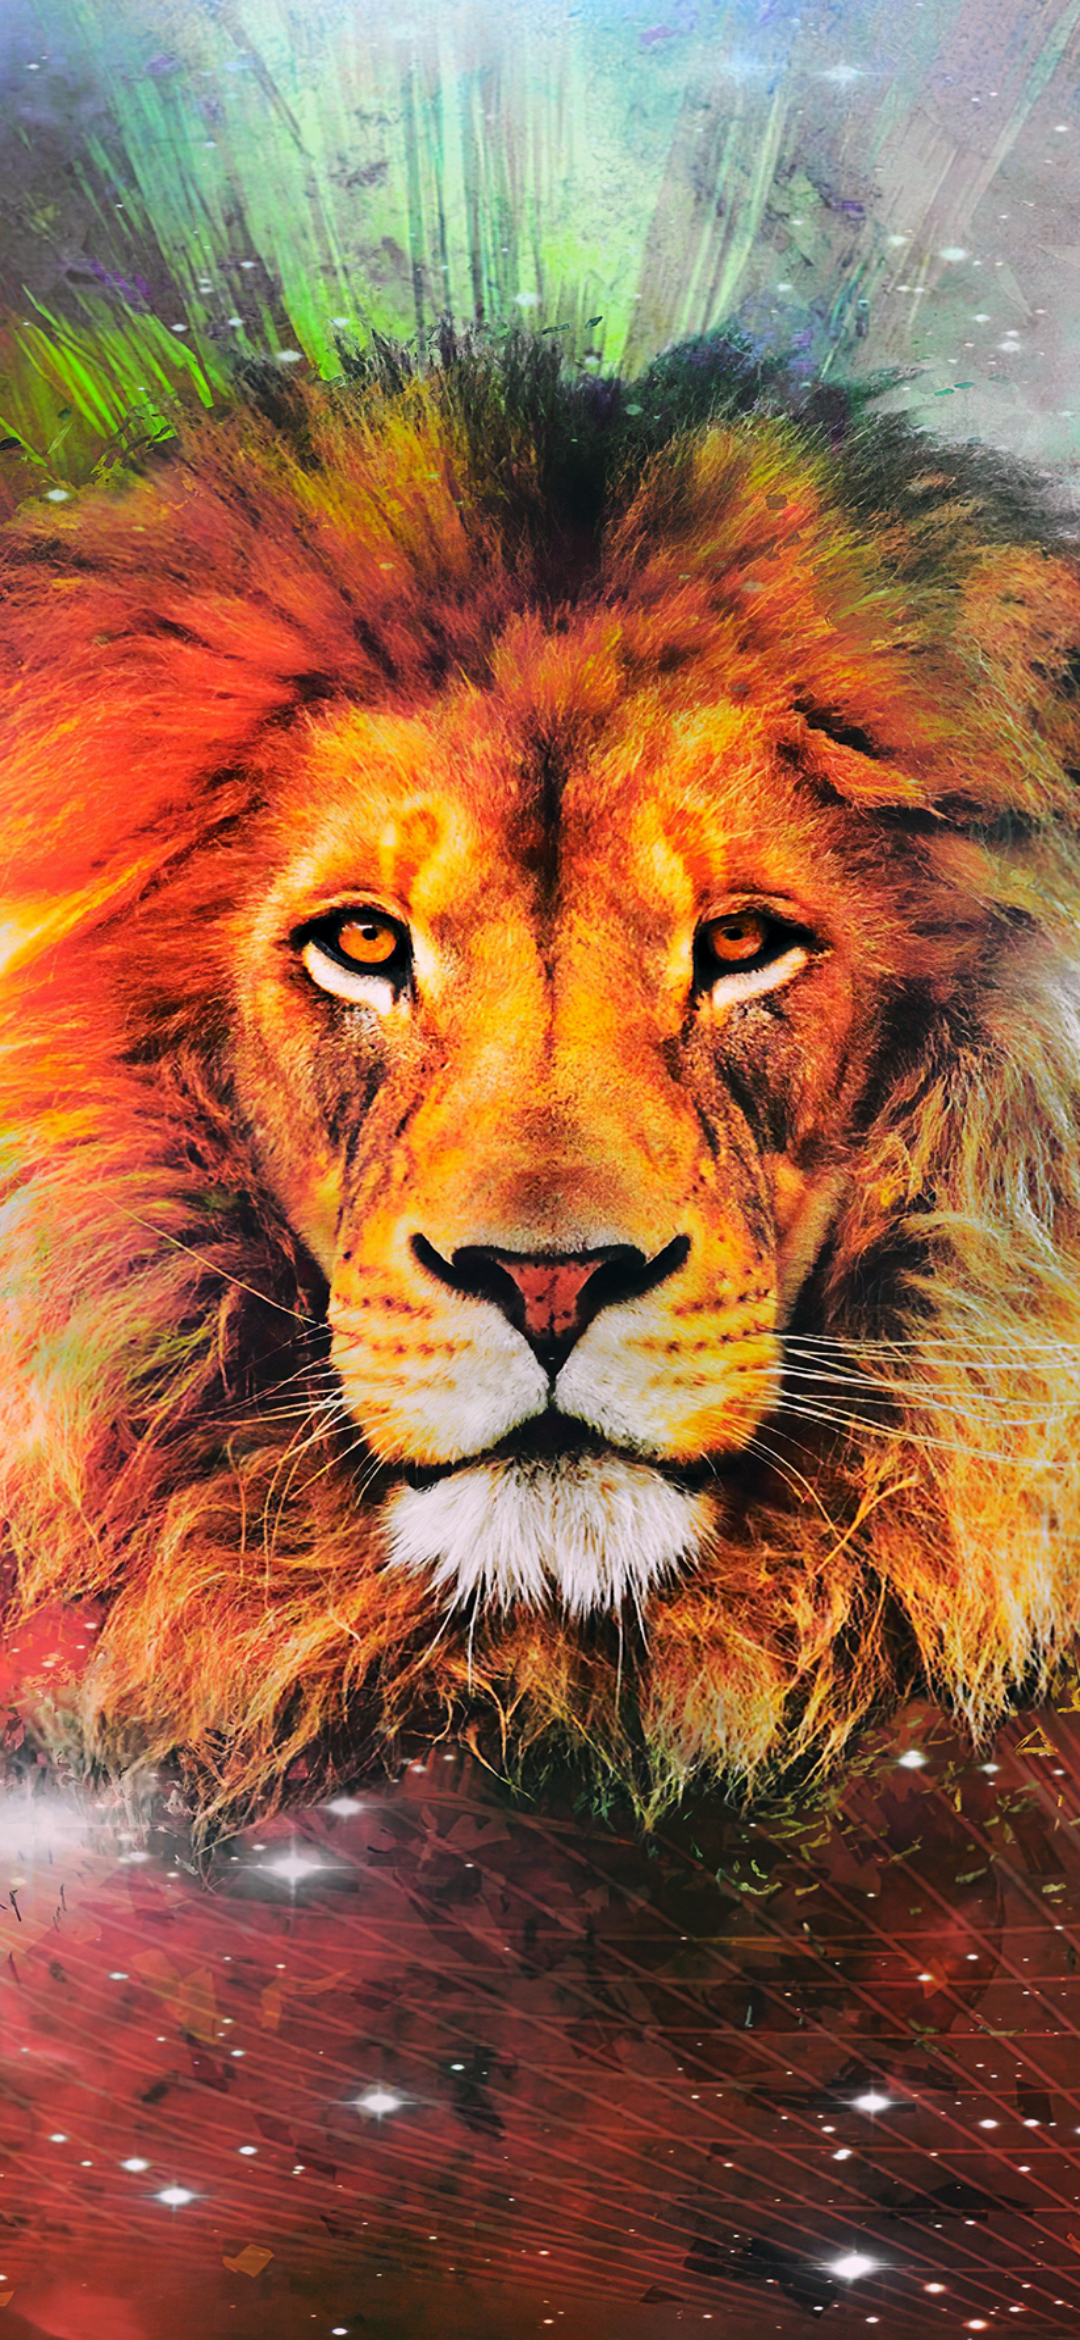 45 Lion iPhone Wallpaper  WallpaperSafari